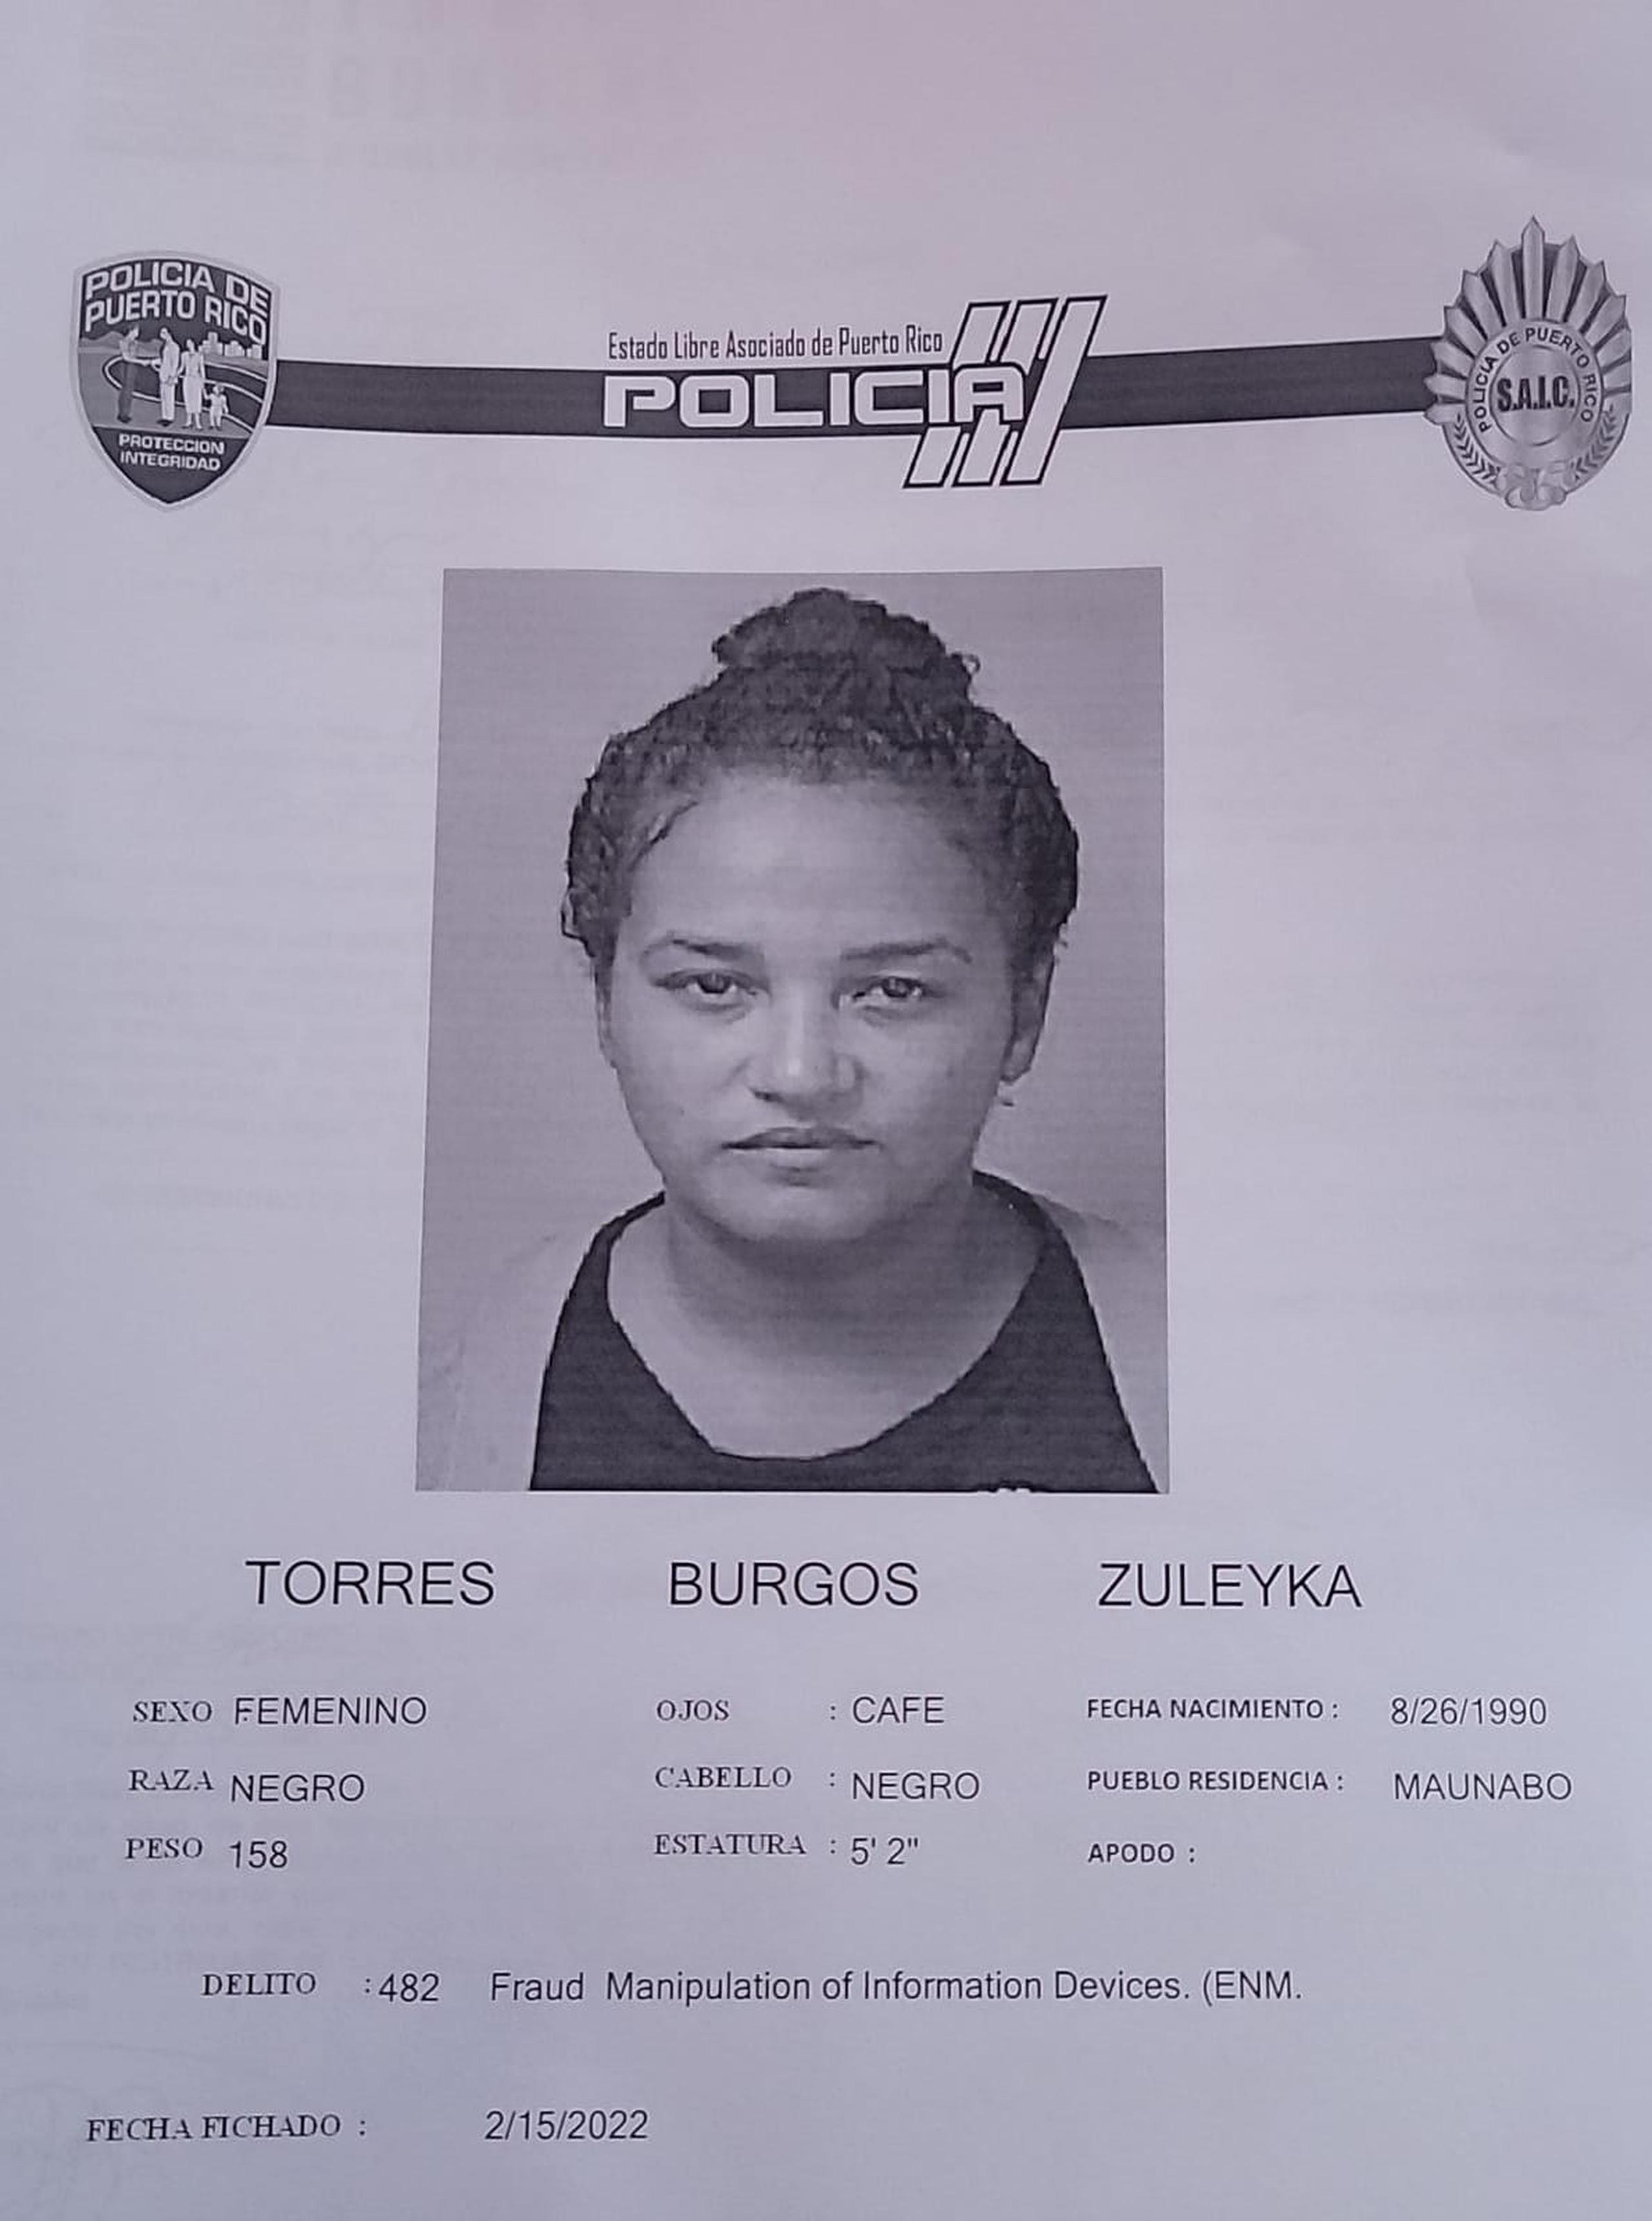 Zuleyka Torres Burgos de 31 años, fue acusada por cargos de apropiación ilegal, posesión y traspaso de documentos falsos, falsedad ideológica, fraude y maltrato a una persona de edad avanzada.